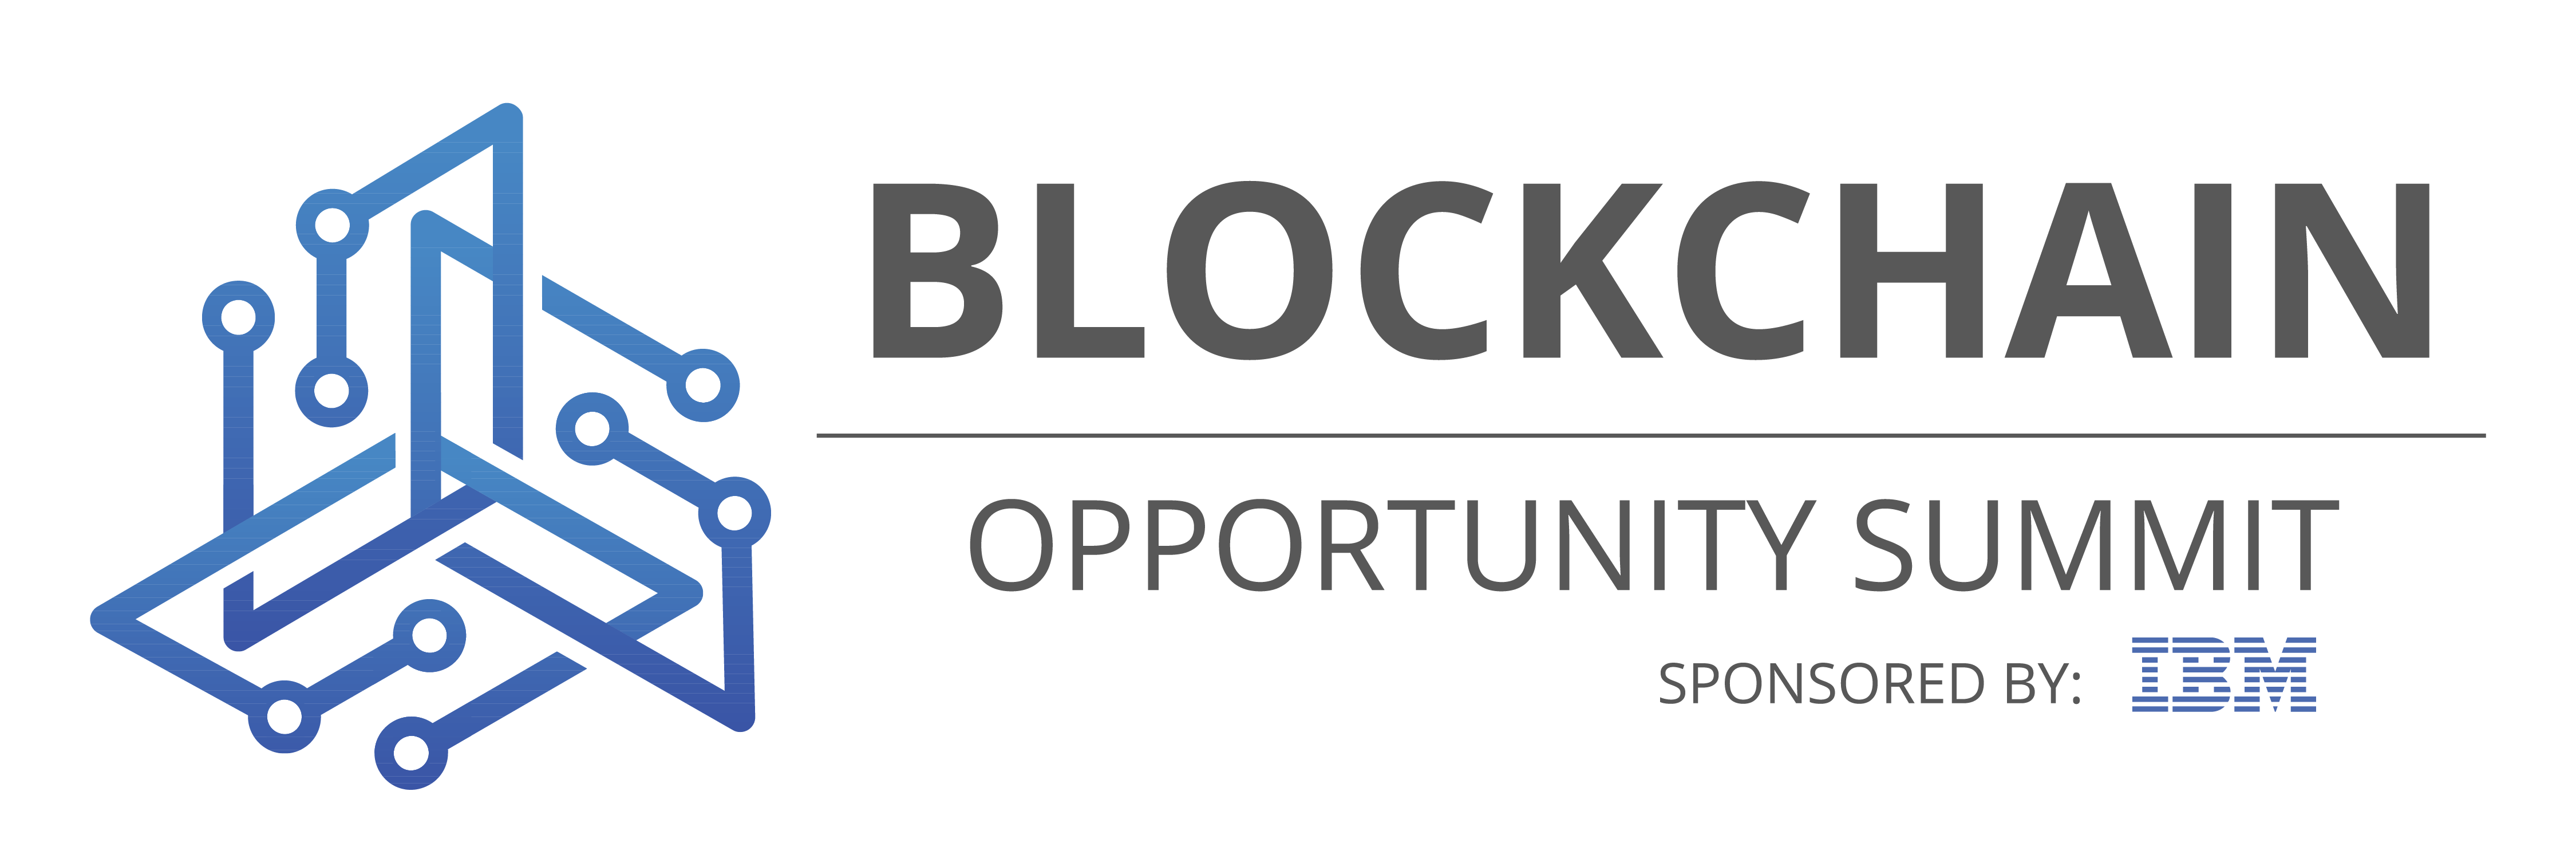 Blockchain Opportunity Summit